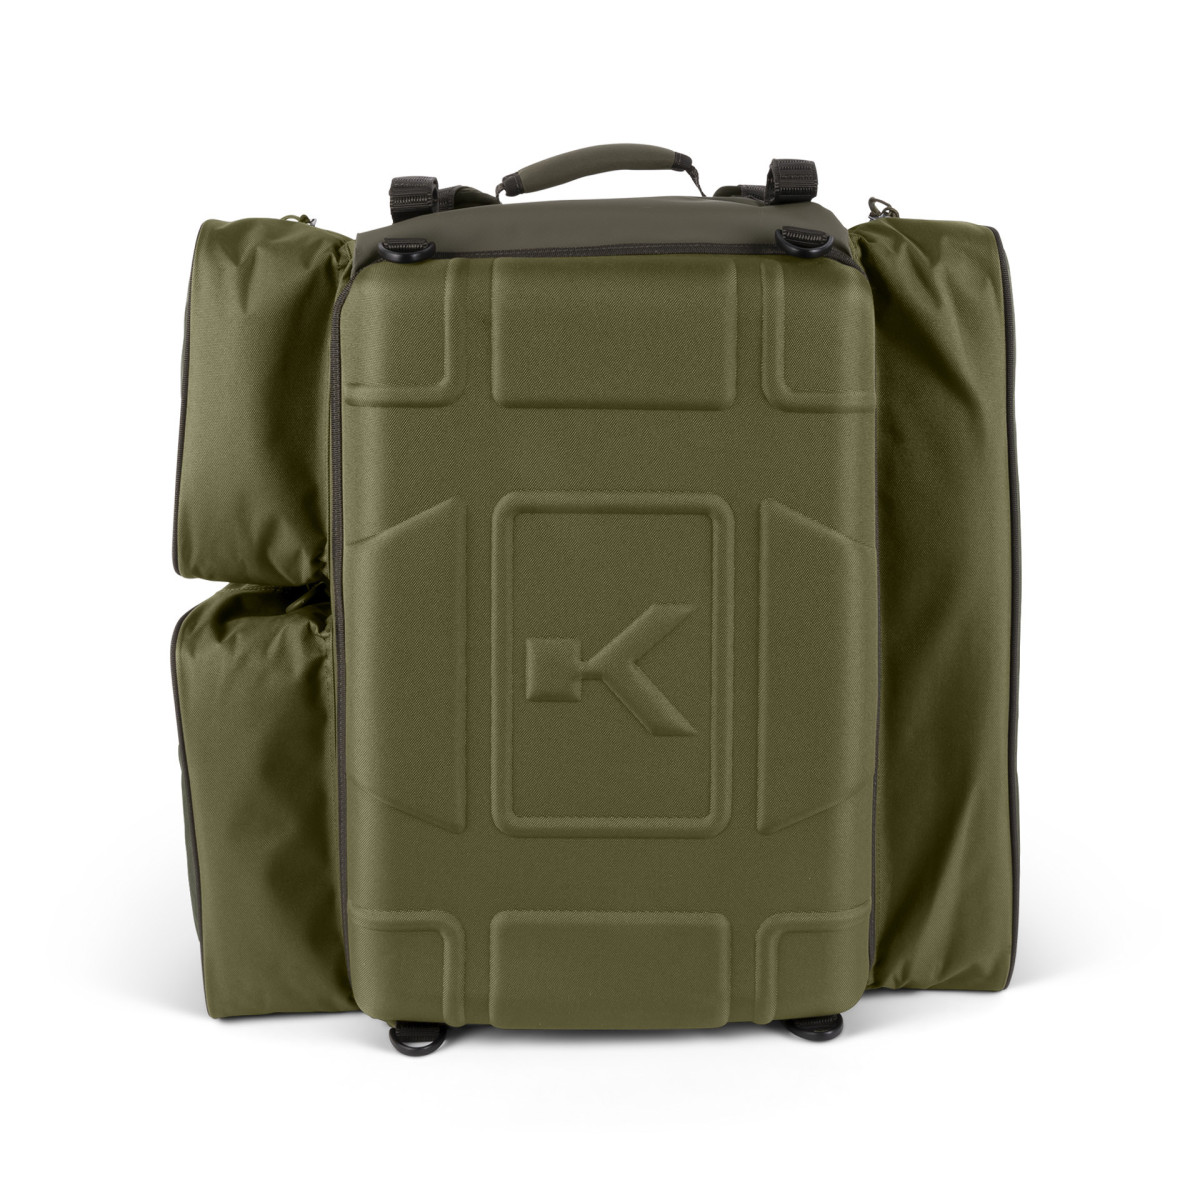 K0290101 Plecak Korum Progress Ruckbag XT - 45L